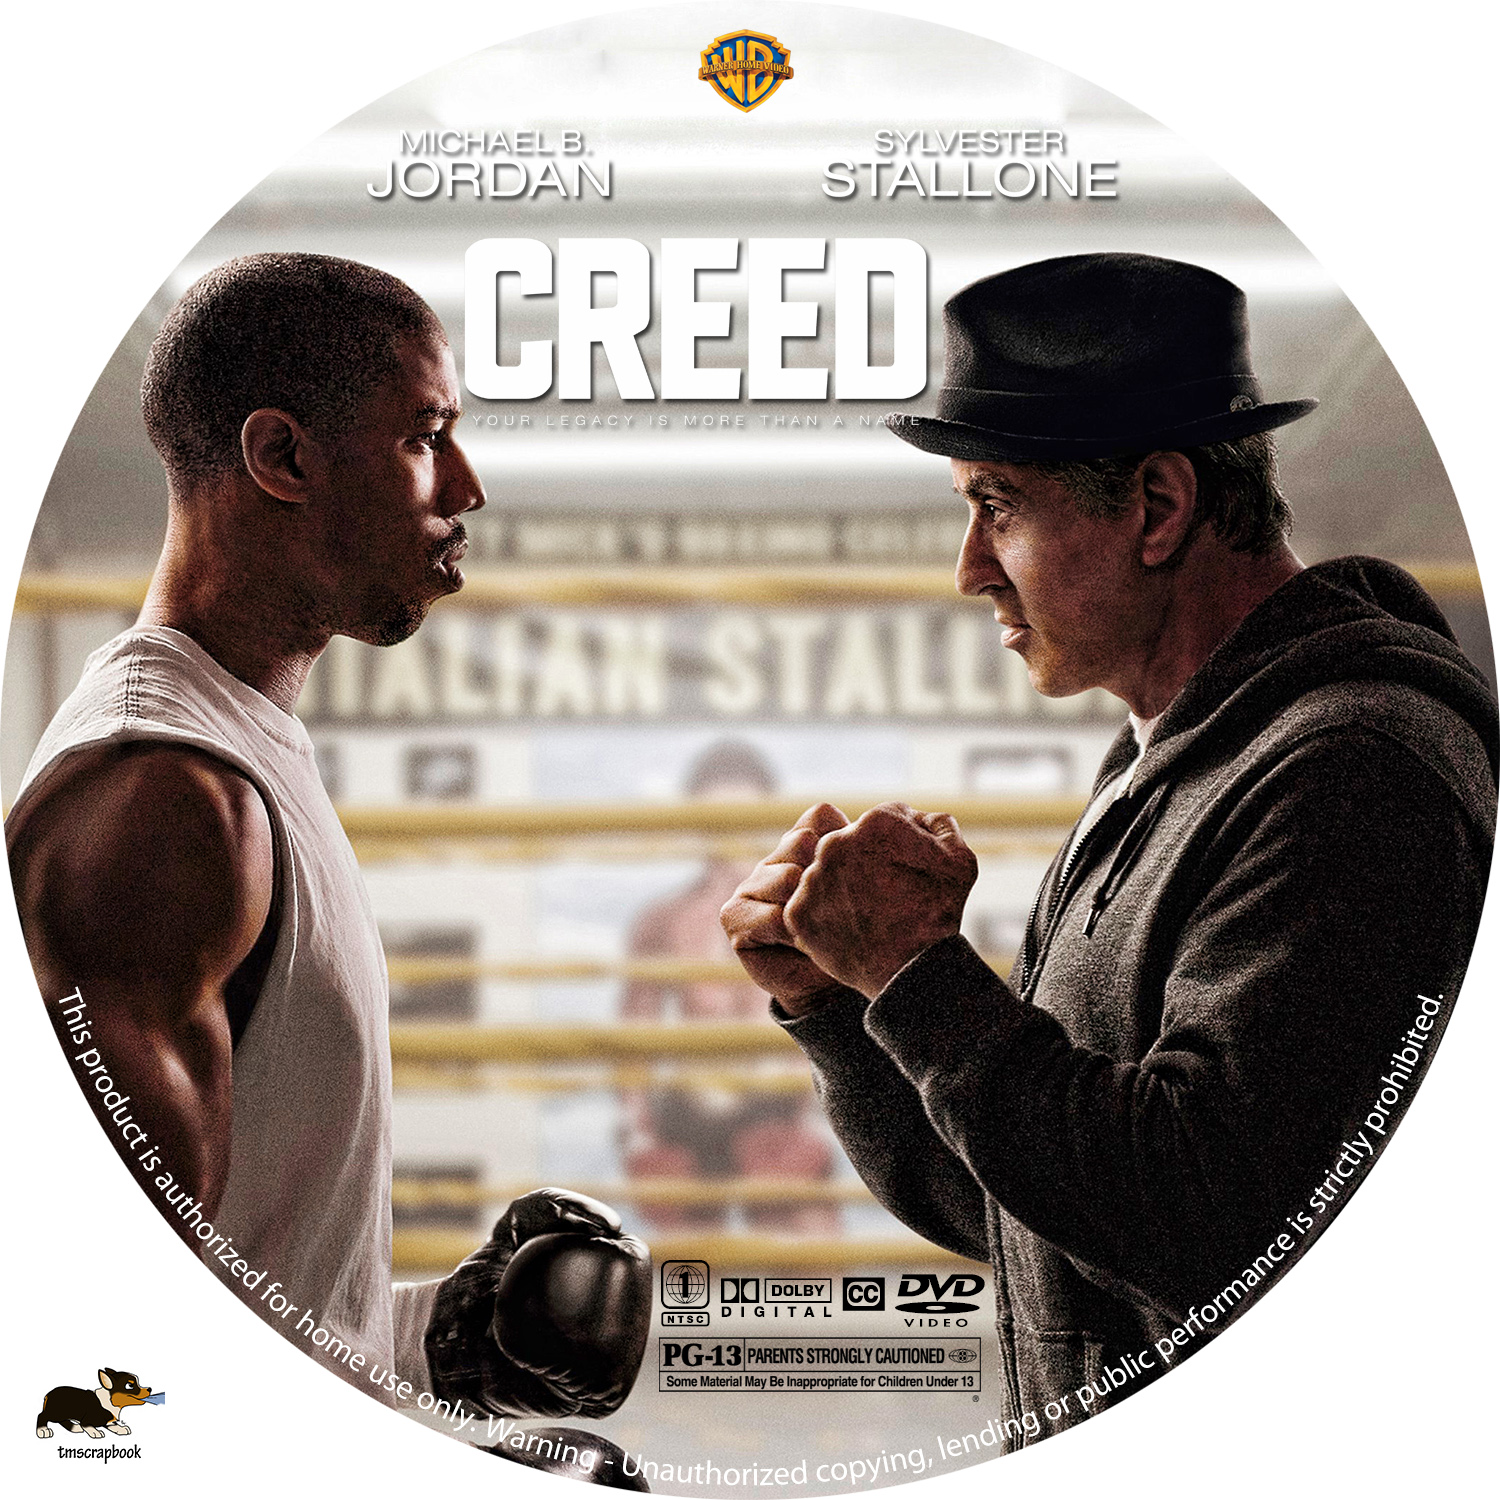 Саундтрек крид. Крид наследие Рокки обложка. Creed CD Cover. Крид наследие Рокки и его пояс чемпиона. Creed компания история.